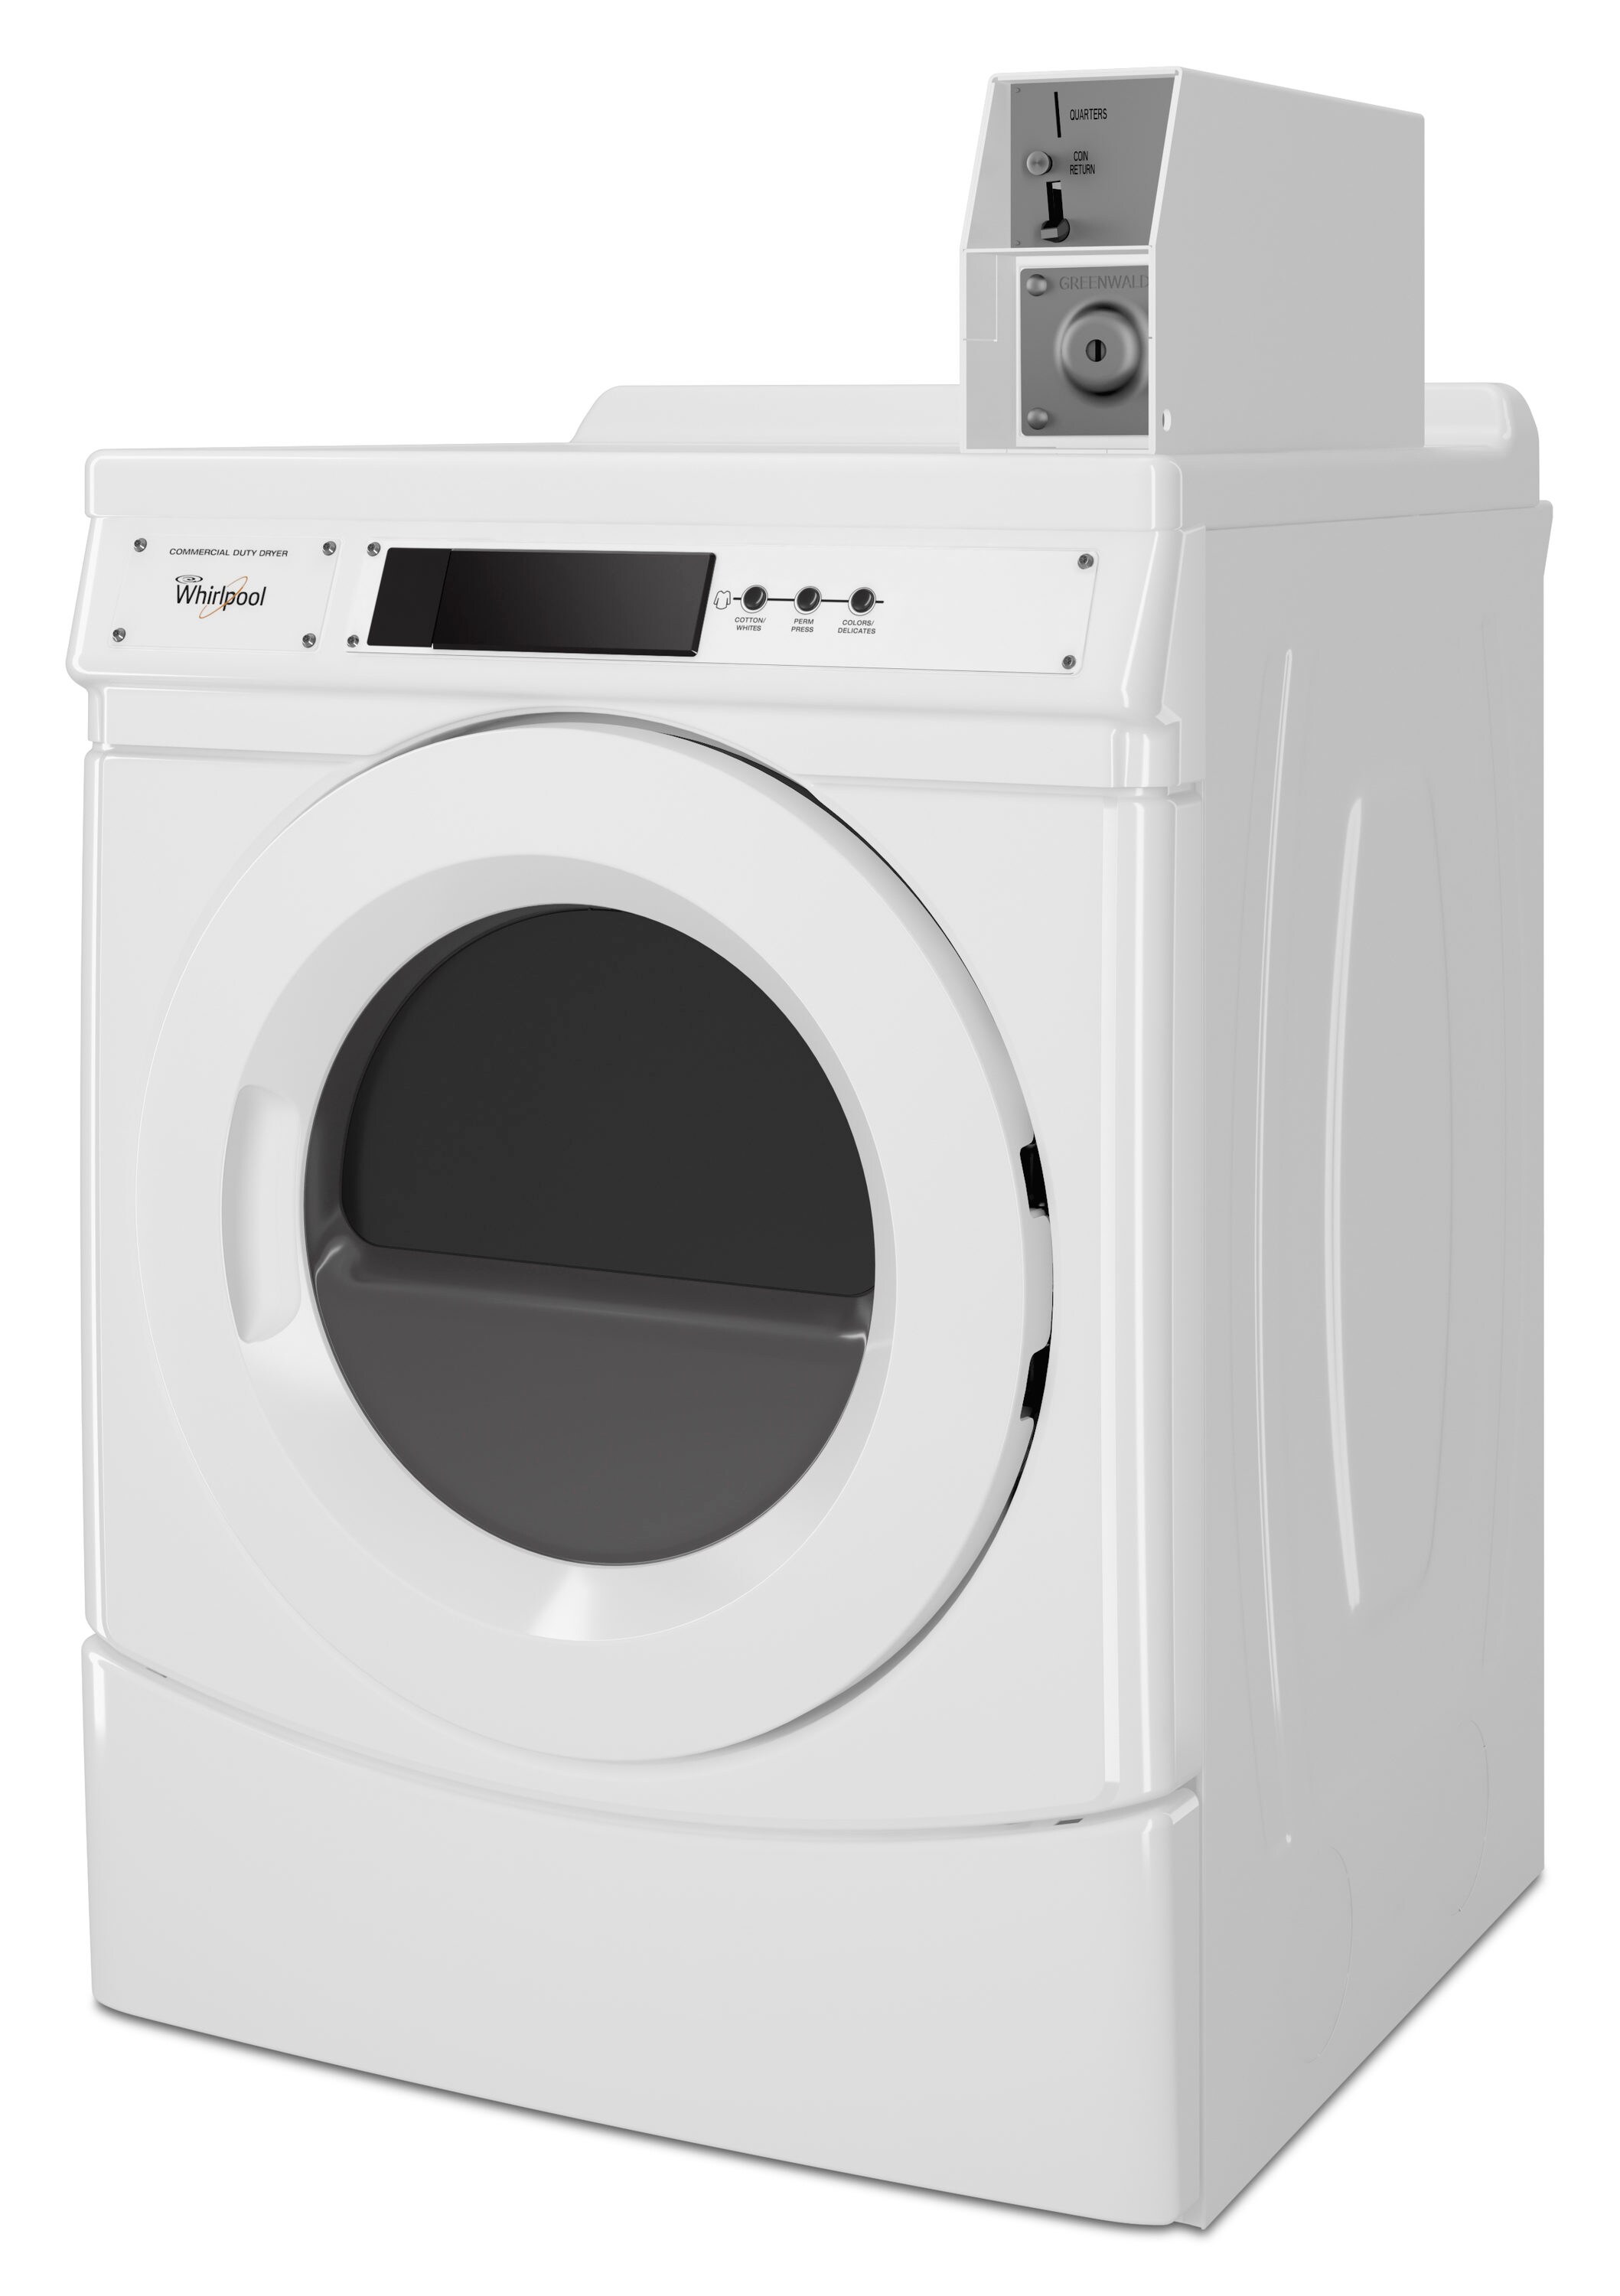 mini lavadora/secadora) portable washer dryer for Sale in Miami, FL -  OfferUp